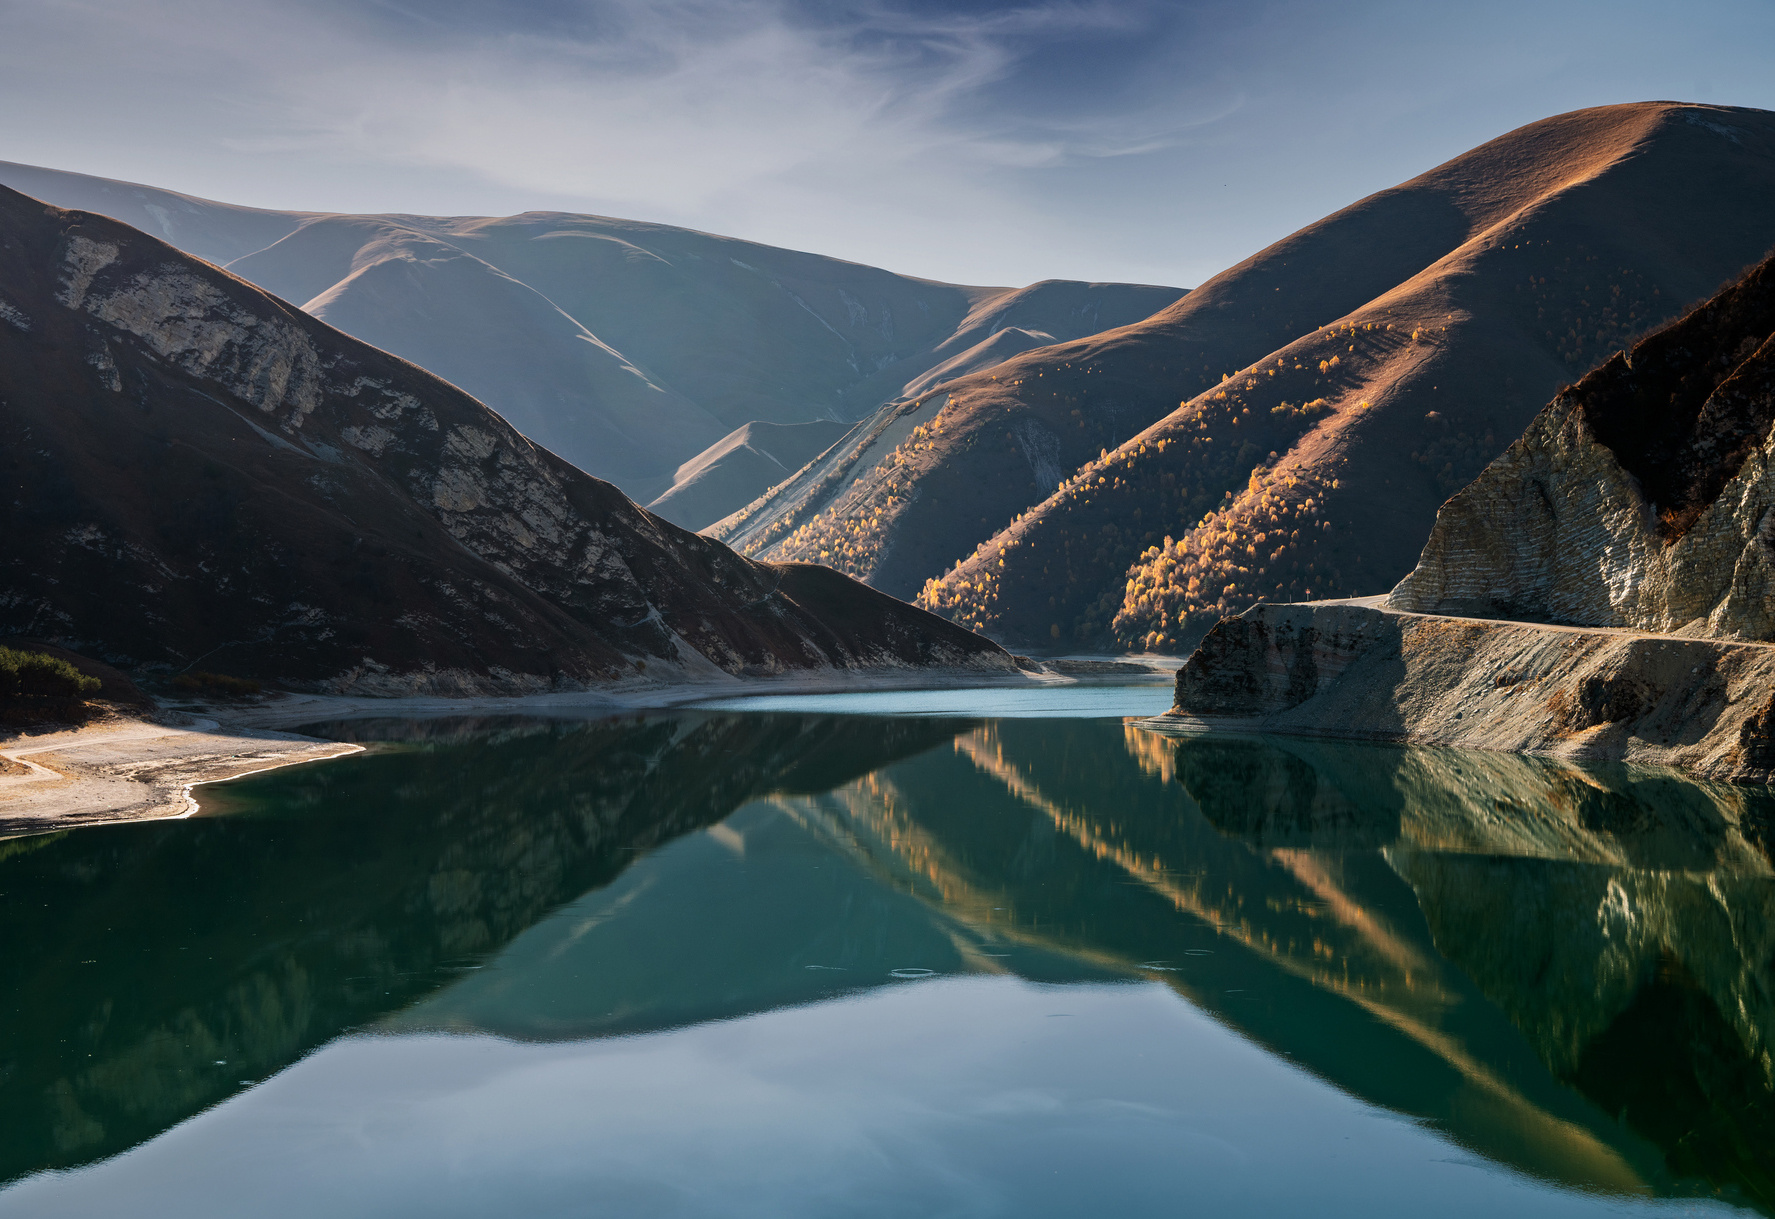 Даже летом вода озера прогревается только до 18 градусов. Фото: Абдуллах Берсаев, участник фотоконкурса РГО 